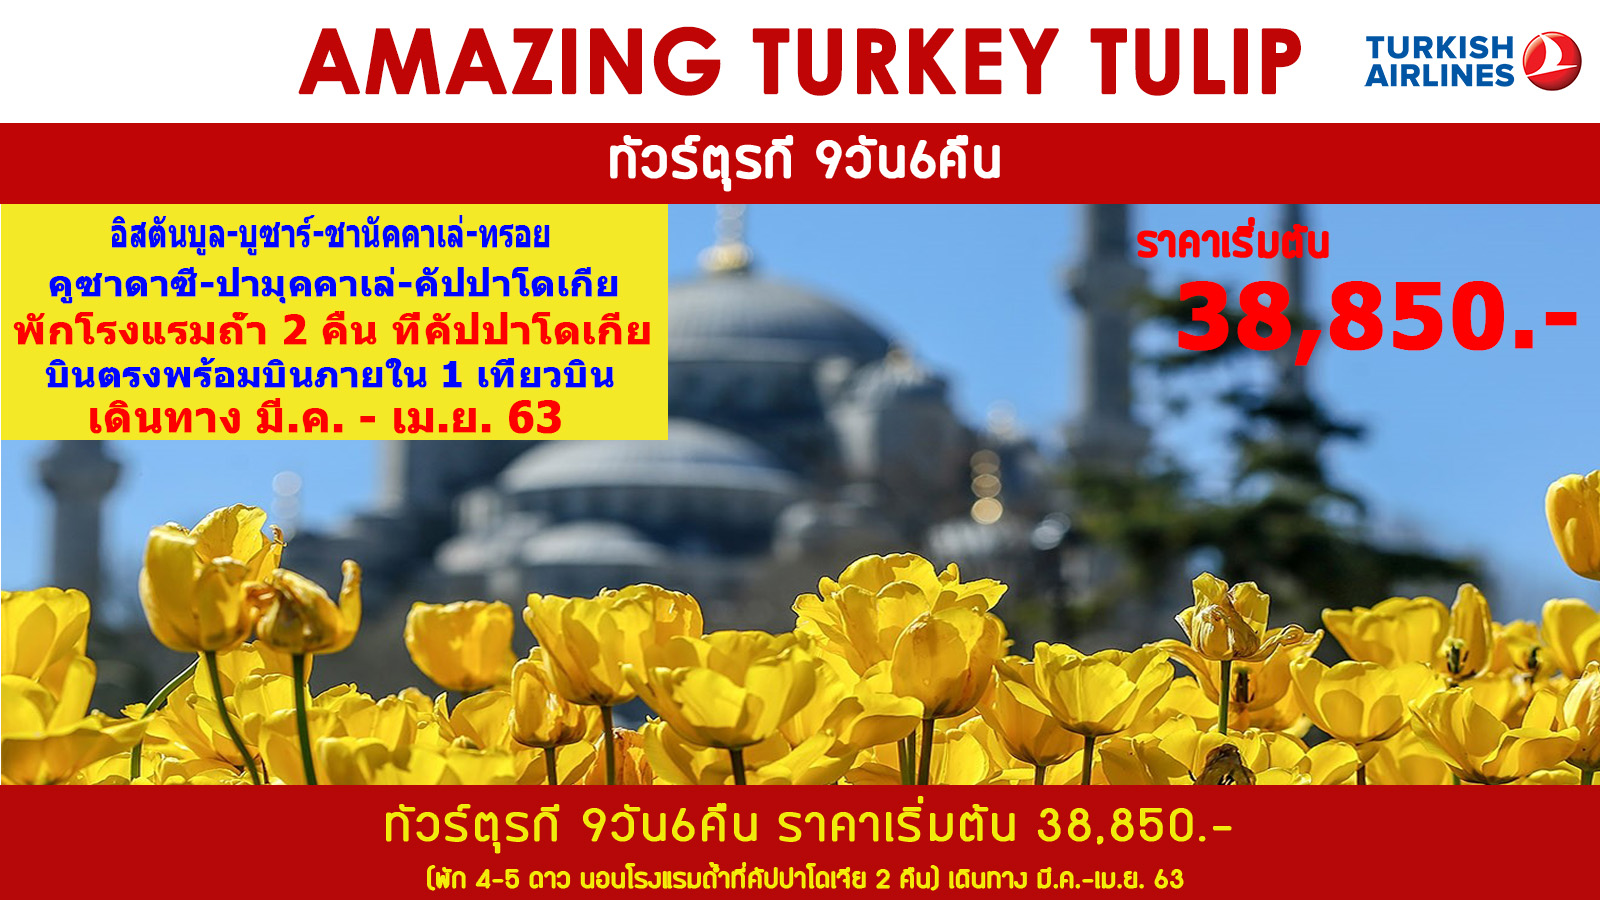 ทัวร์ตุรกี  : AMAZING TURKEY TULIP